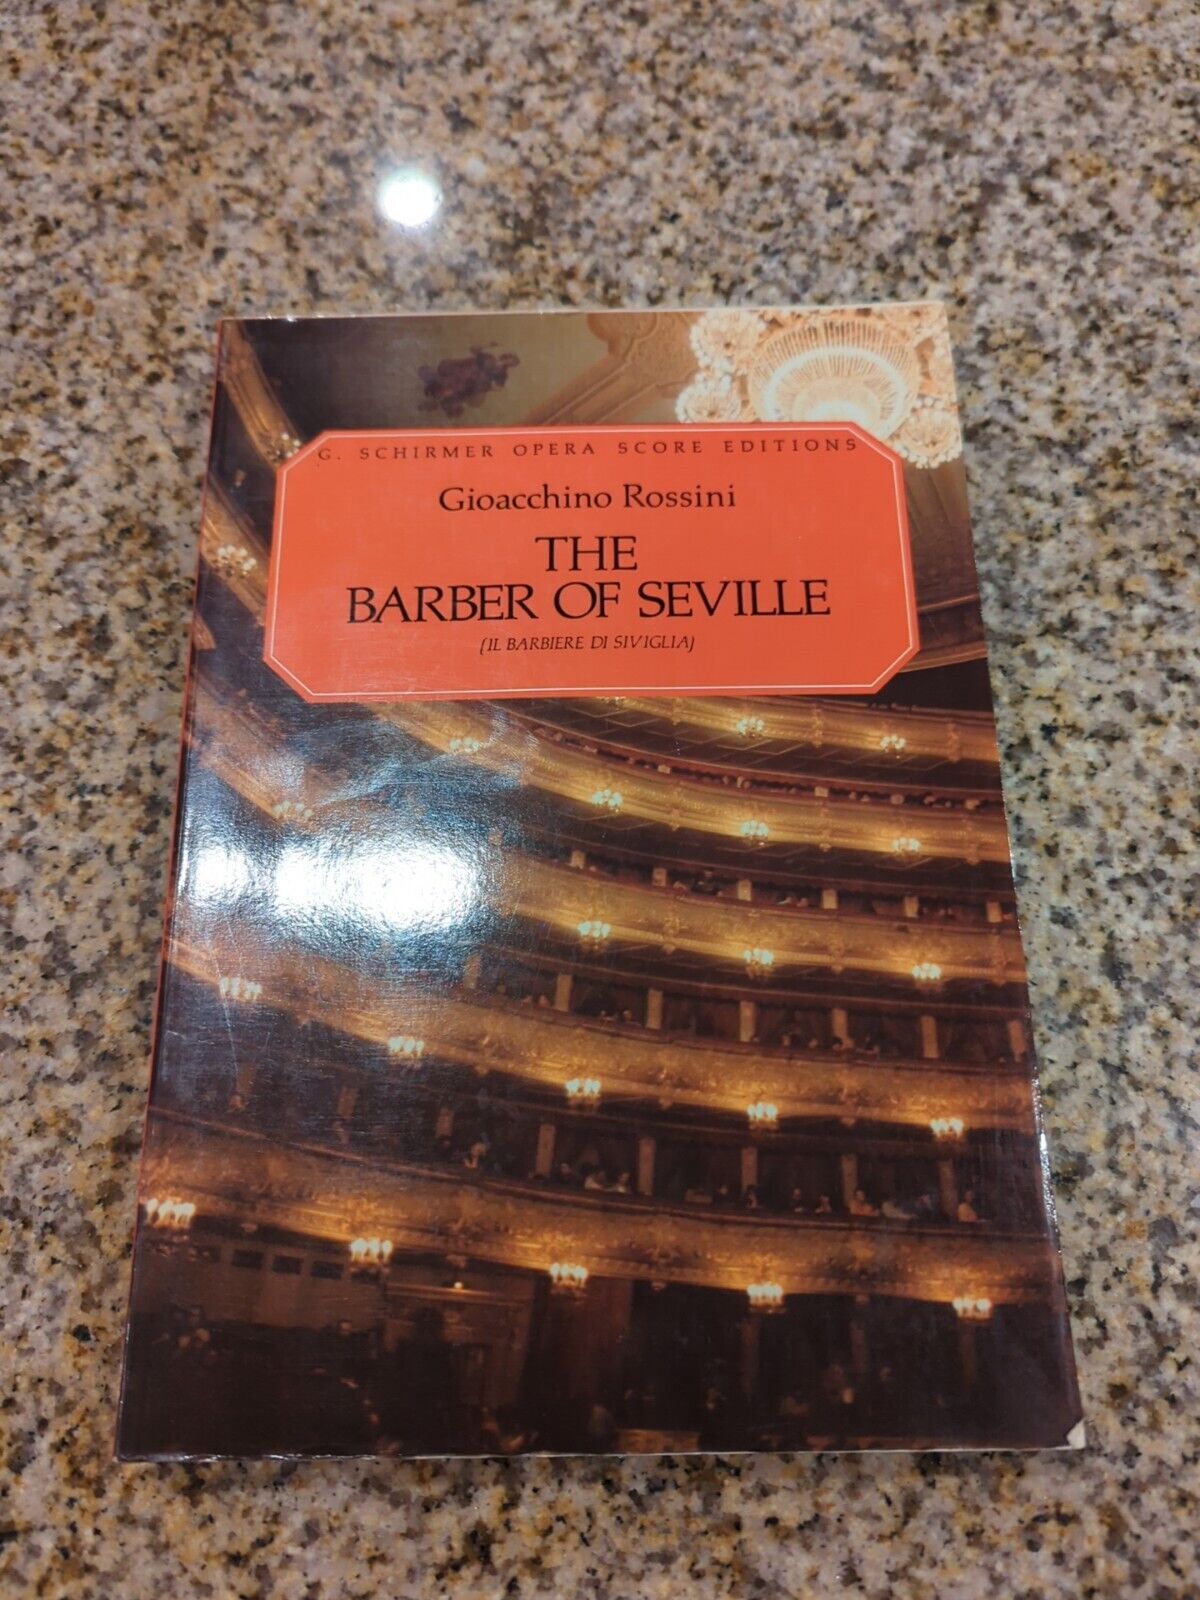 Vtg The Barber Of Seville Music Opera Score Book Gioacchino Rossini 1962